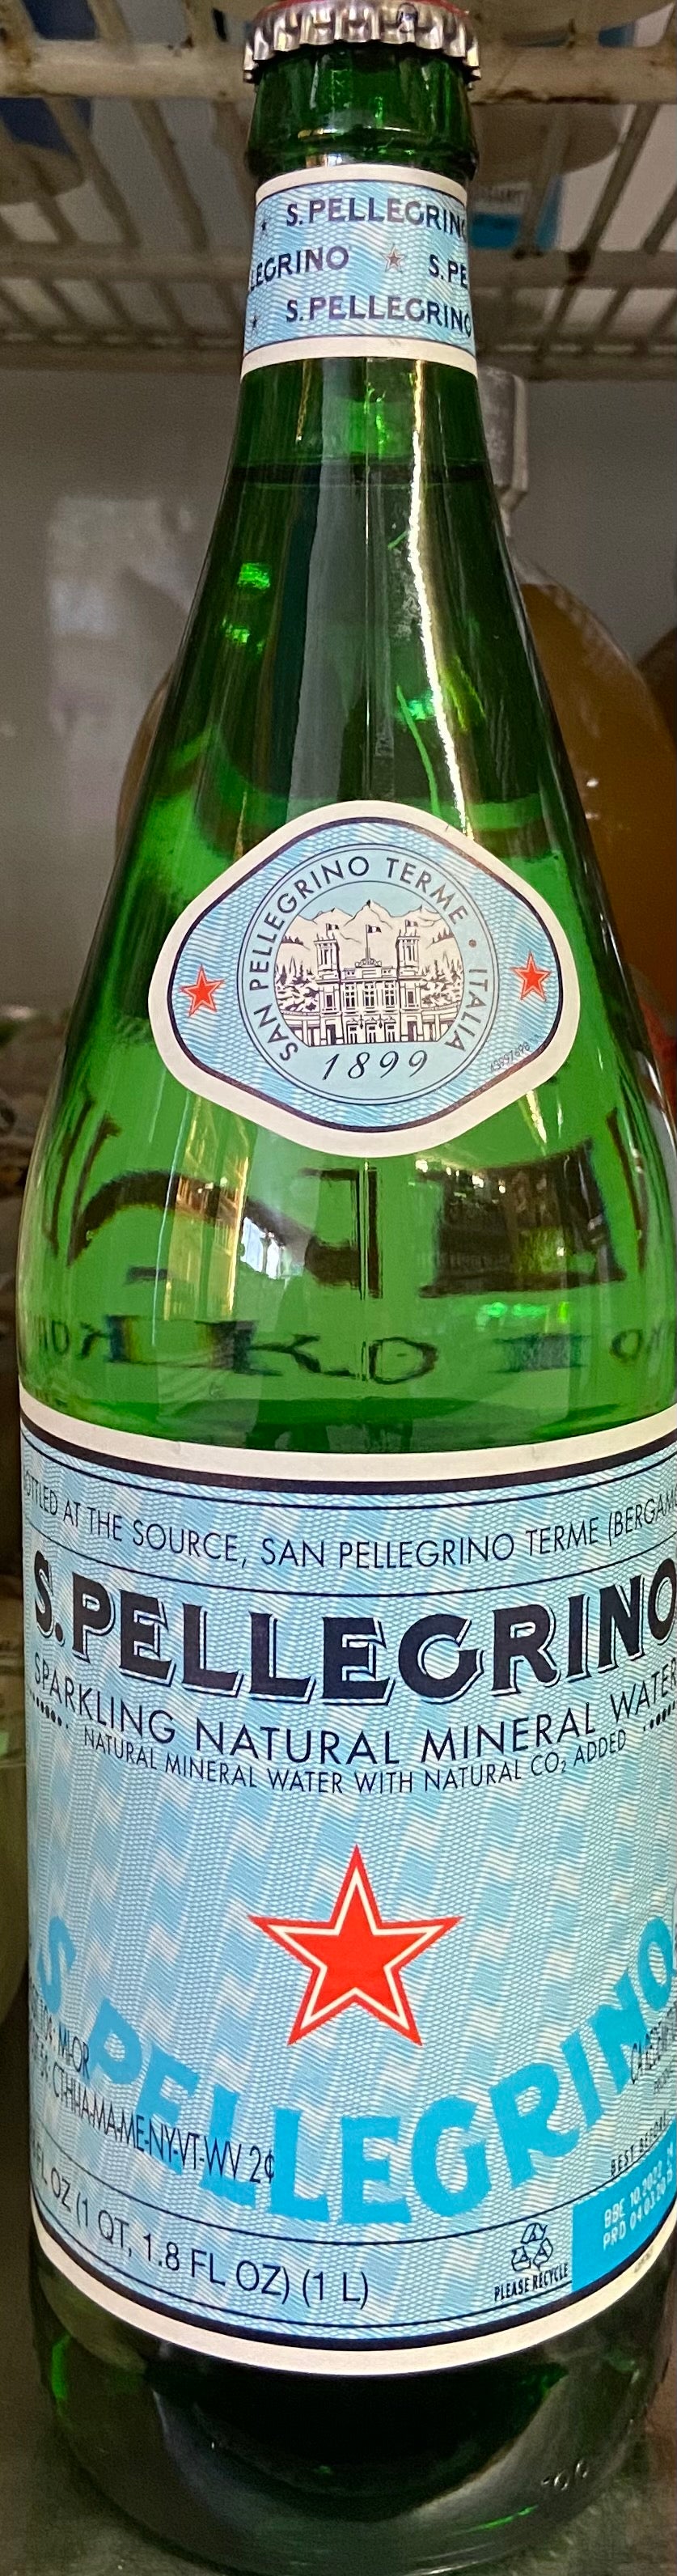 Sparkling Mineral Water, San Pellegrino